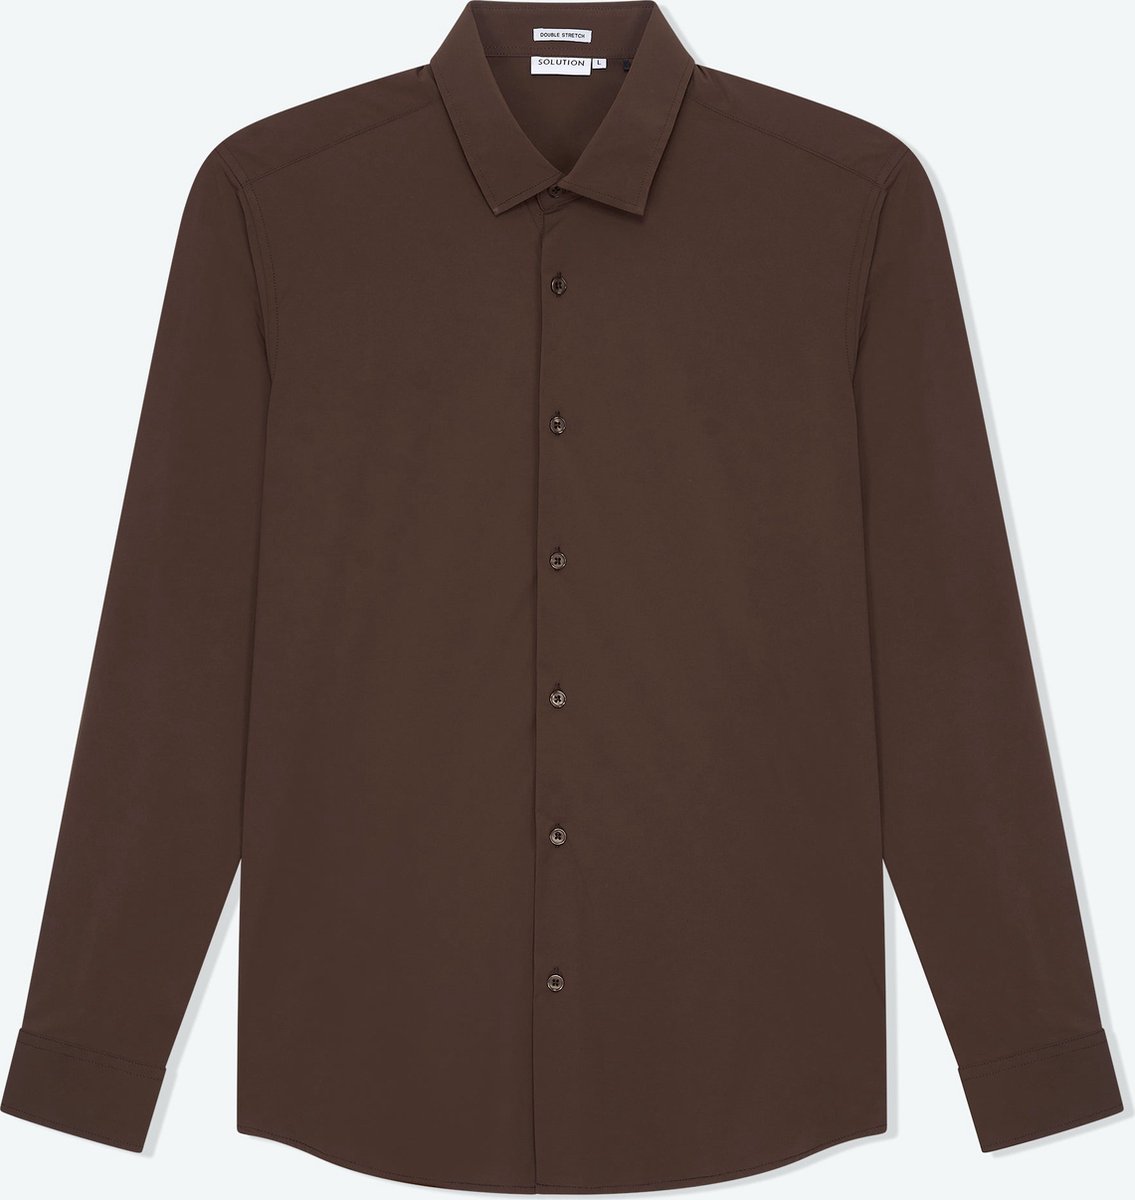 Solution Clothing Felix - Casual Overhemd - Kreukvrij - Lange Mouw - Volwassenen - Heren - Mannen - Bruin - S - S - Solution Clothing